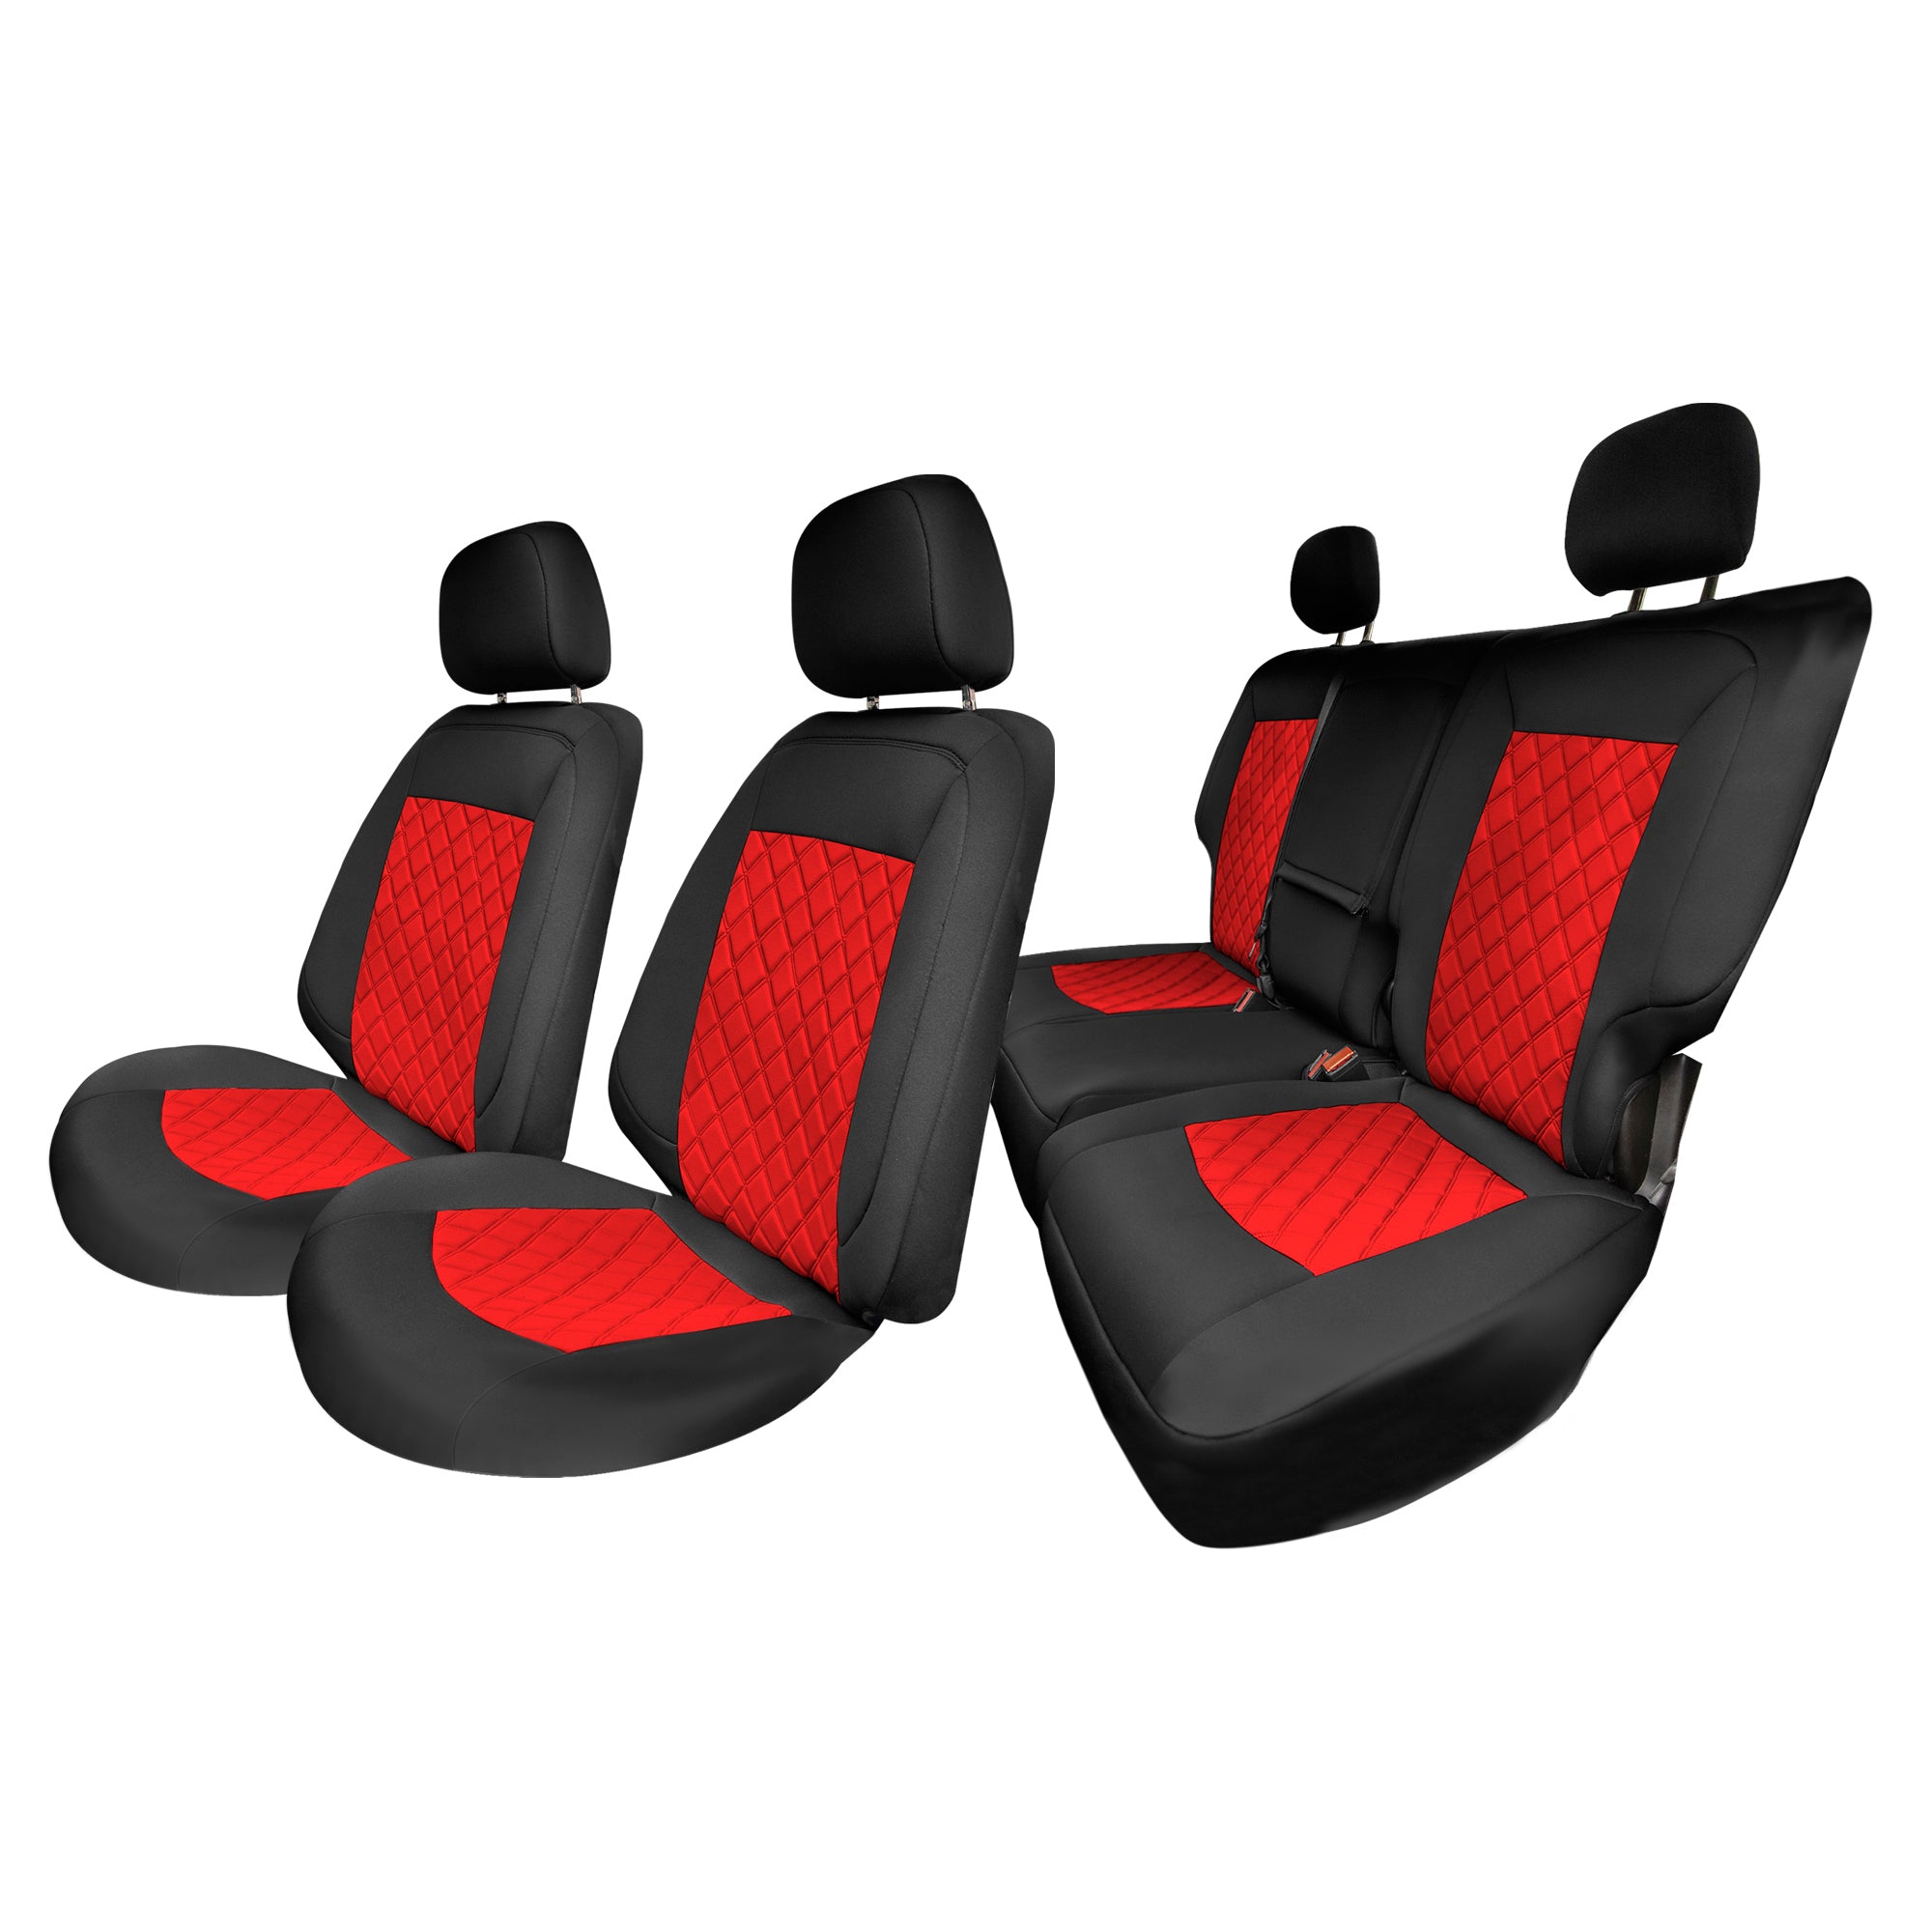 Chevy Equinox 2018-2021 - Full Set Seat Covers - Red Neoprene